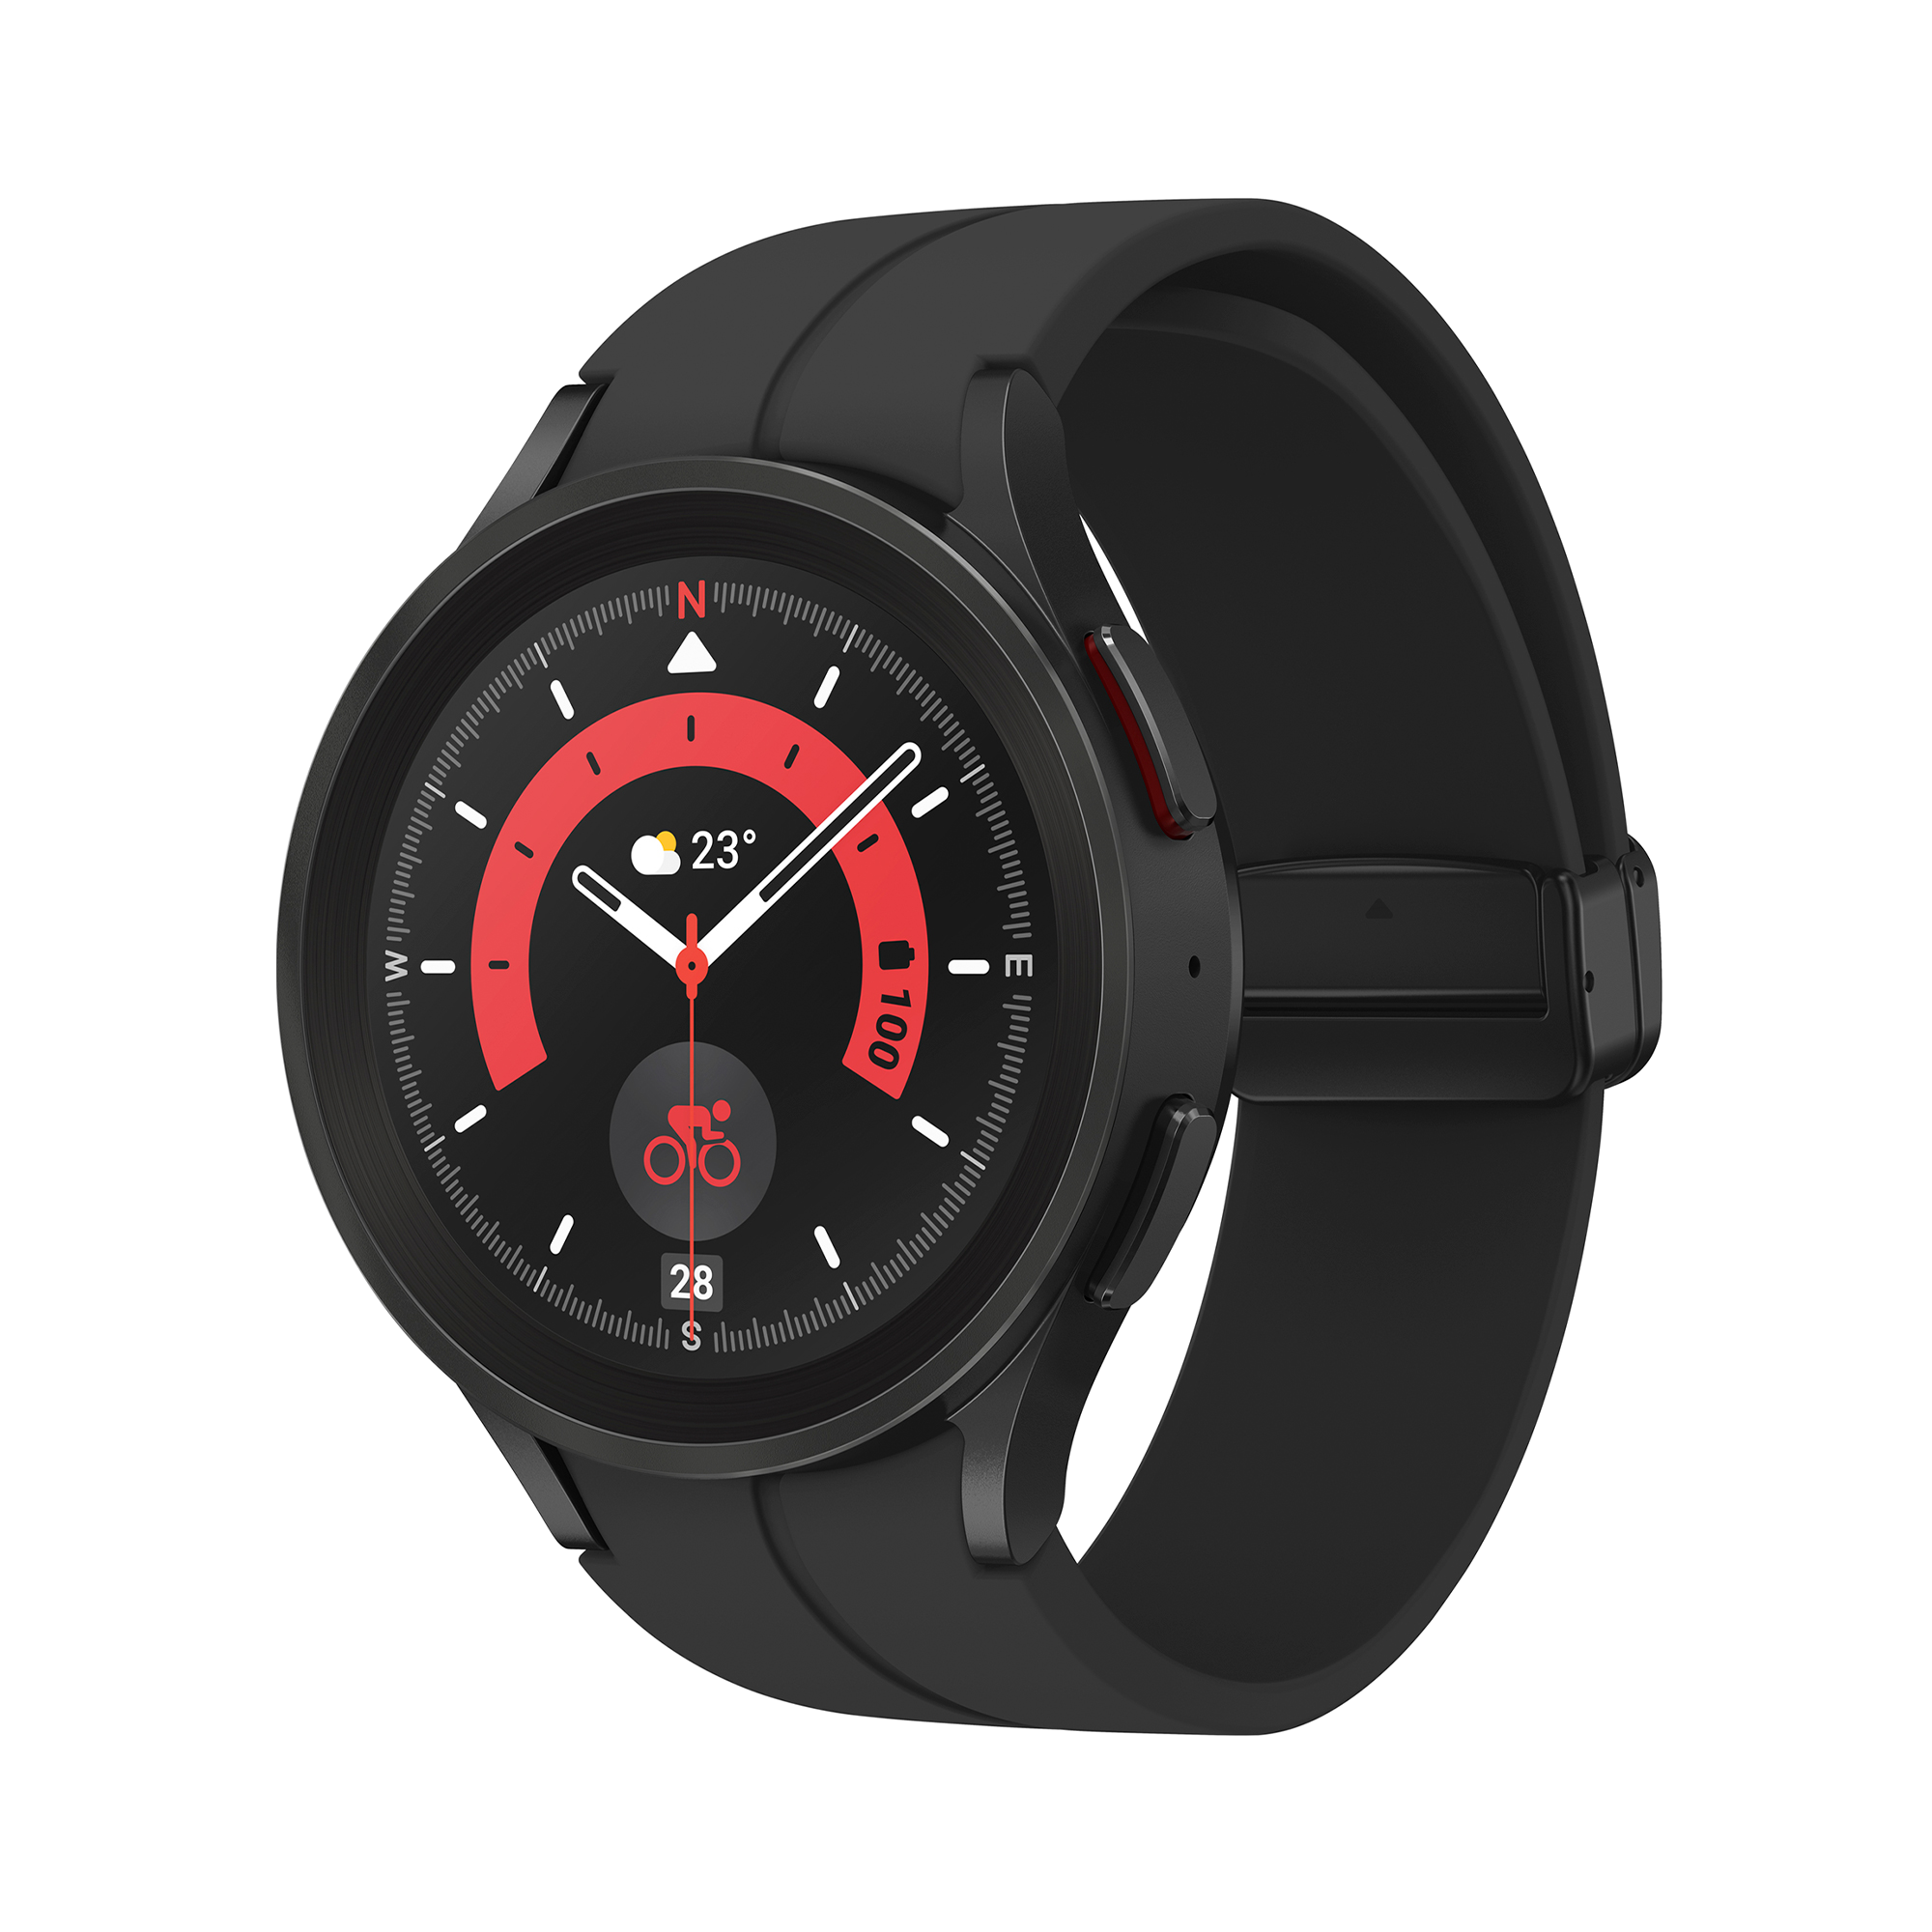 lago dirección consenso Smartwatch | Samsung Galaxy Watch5 Pro BT 45mm, 1.4", Exynos W920, 590 mAh,  Negro